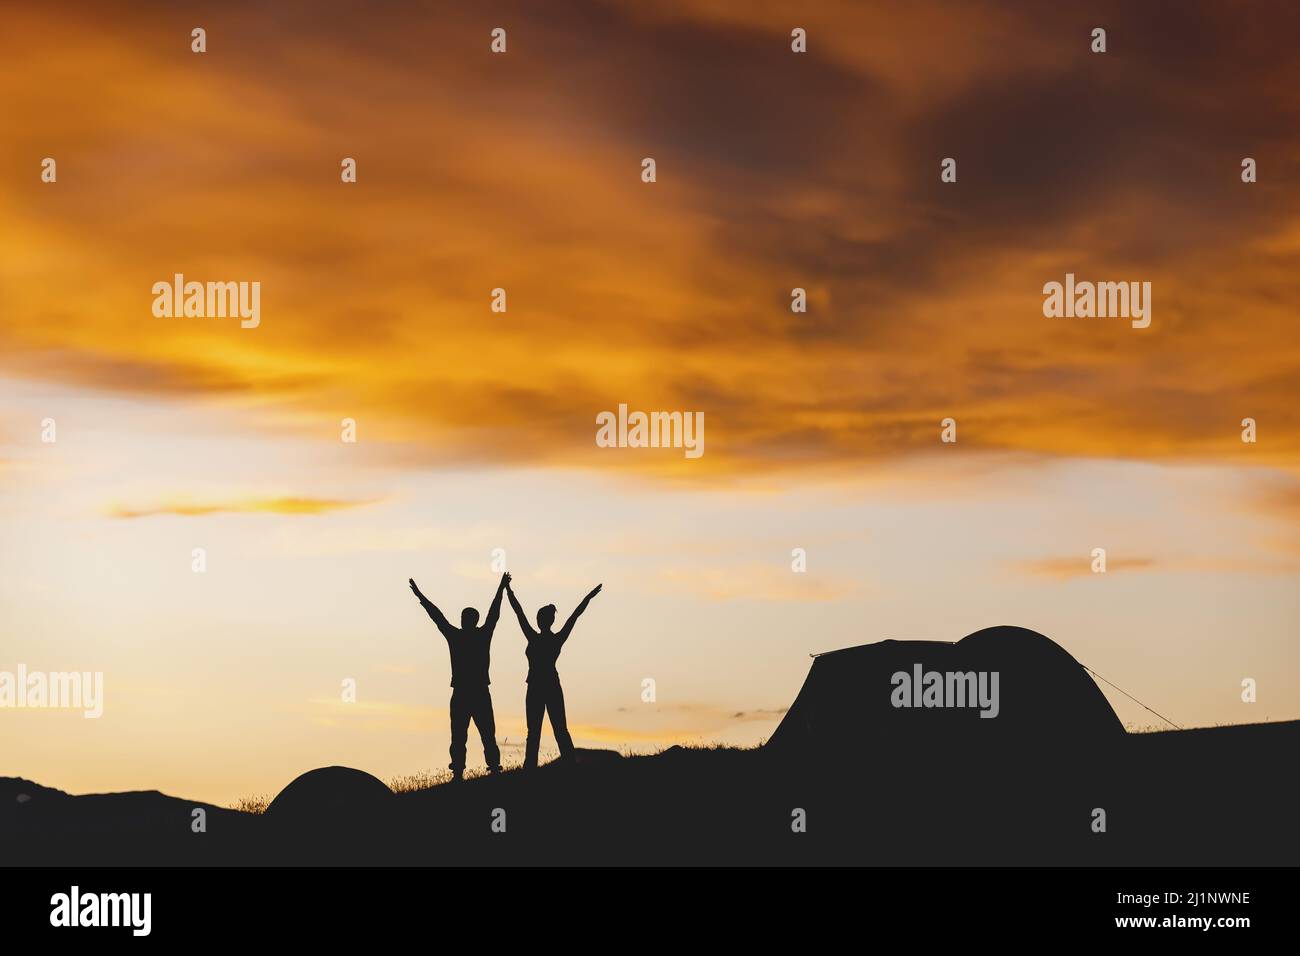 Silhouette eines Paares mit erhöhten Armen und Zelt auf dem Hintergrund des stimmungsvollen Sonnenuntergangs Himmel Stockfoto